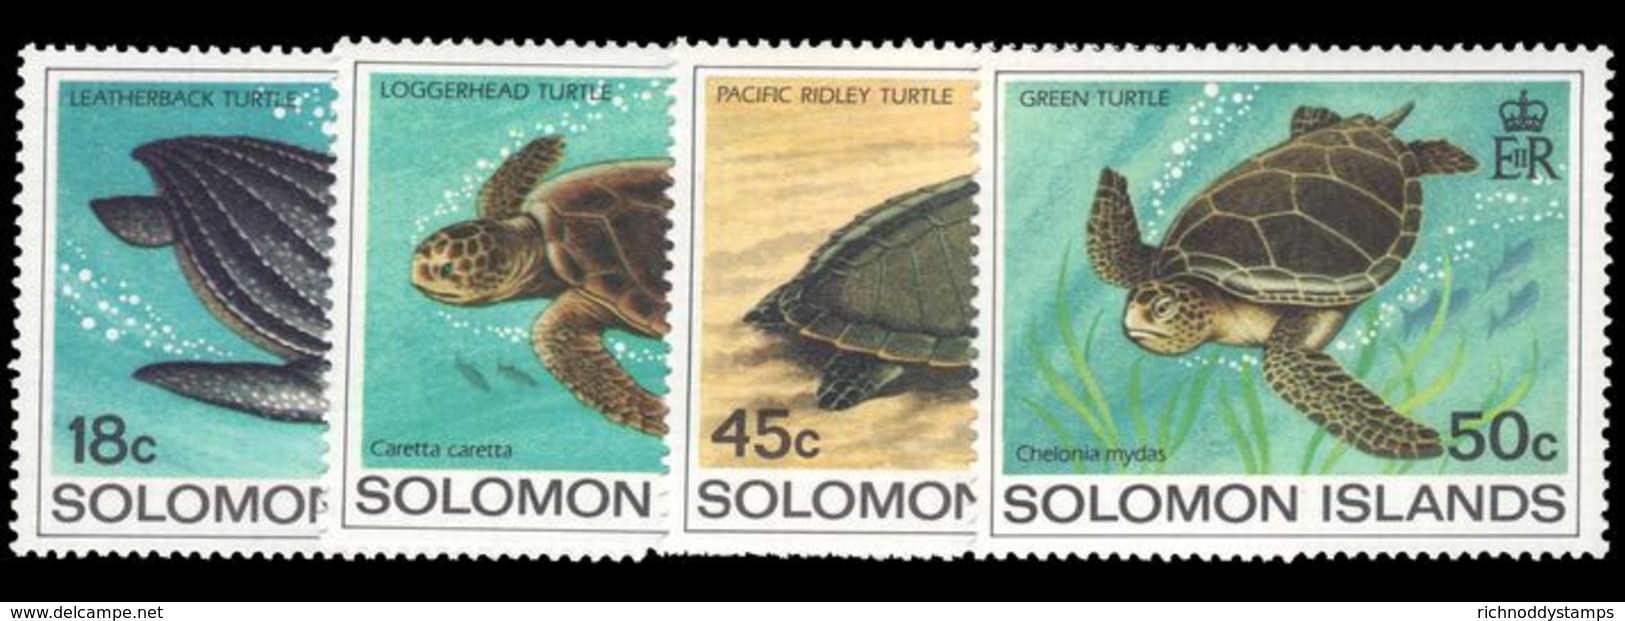 Solomon Islands 1983 Turtles Unmounted Mint. - Solomon Islands (1978-...)